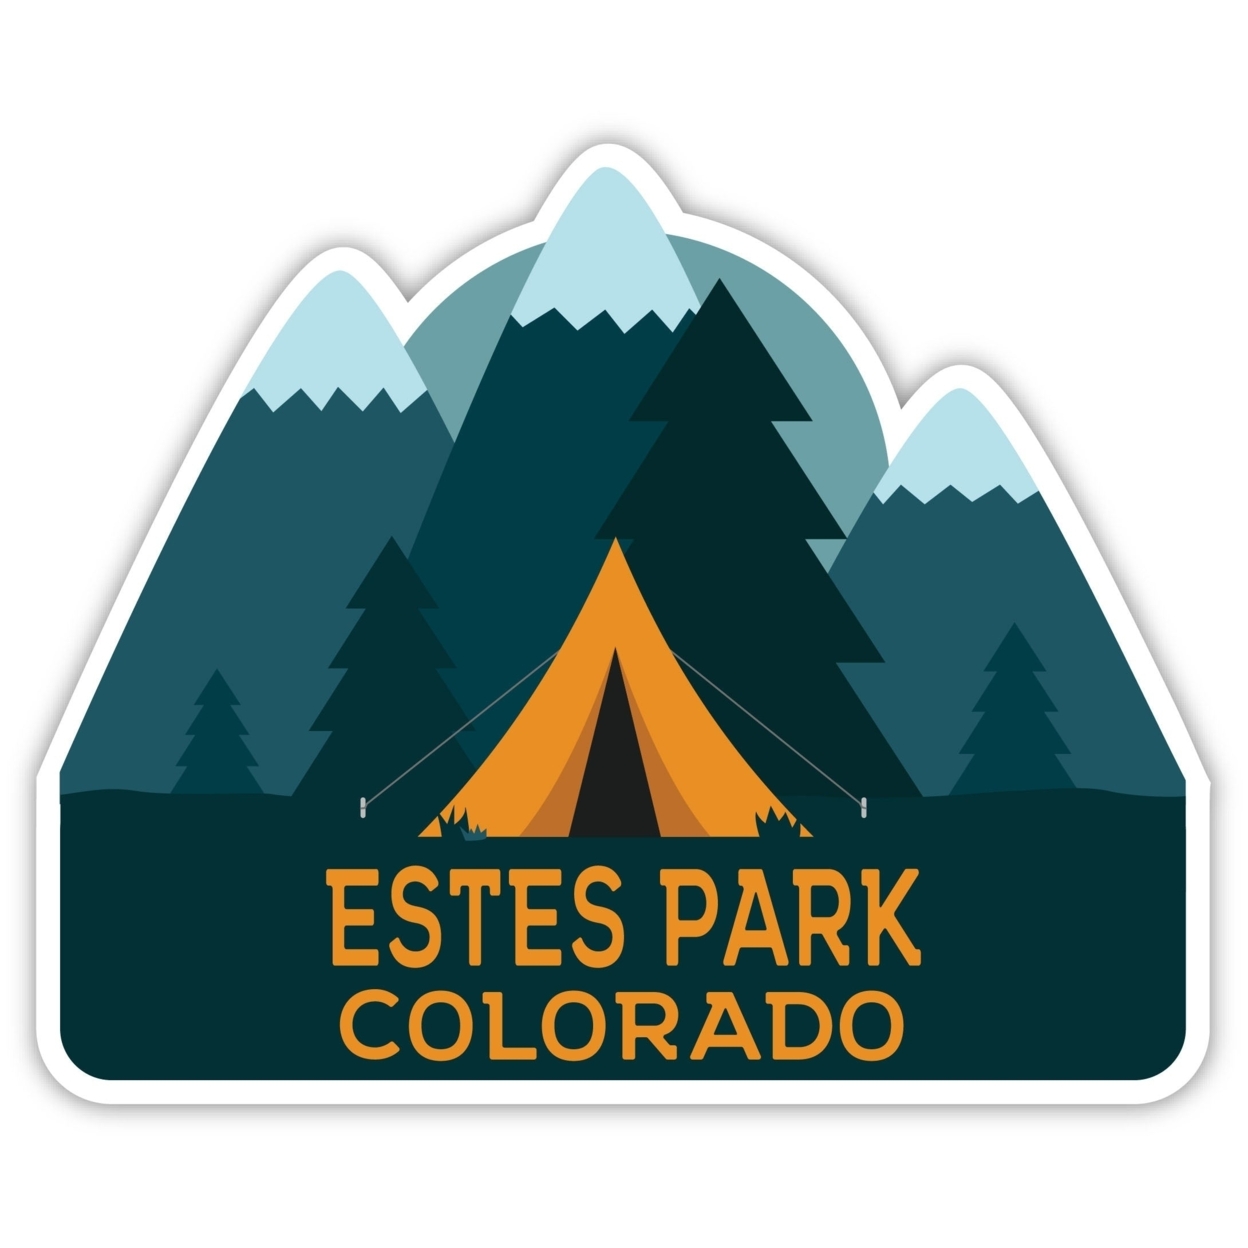 Estes Park Colorado Souvenir Decorative Stickers (Choose Theme And Size) - Single Unit, 10-Inch, Bear